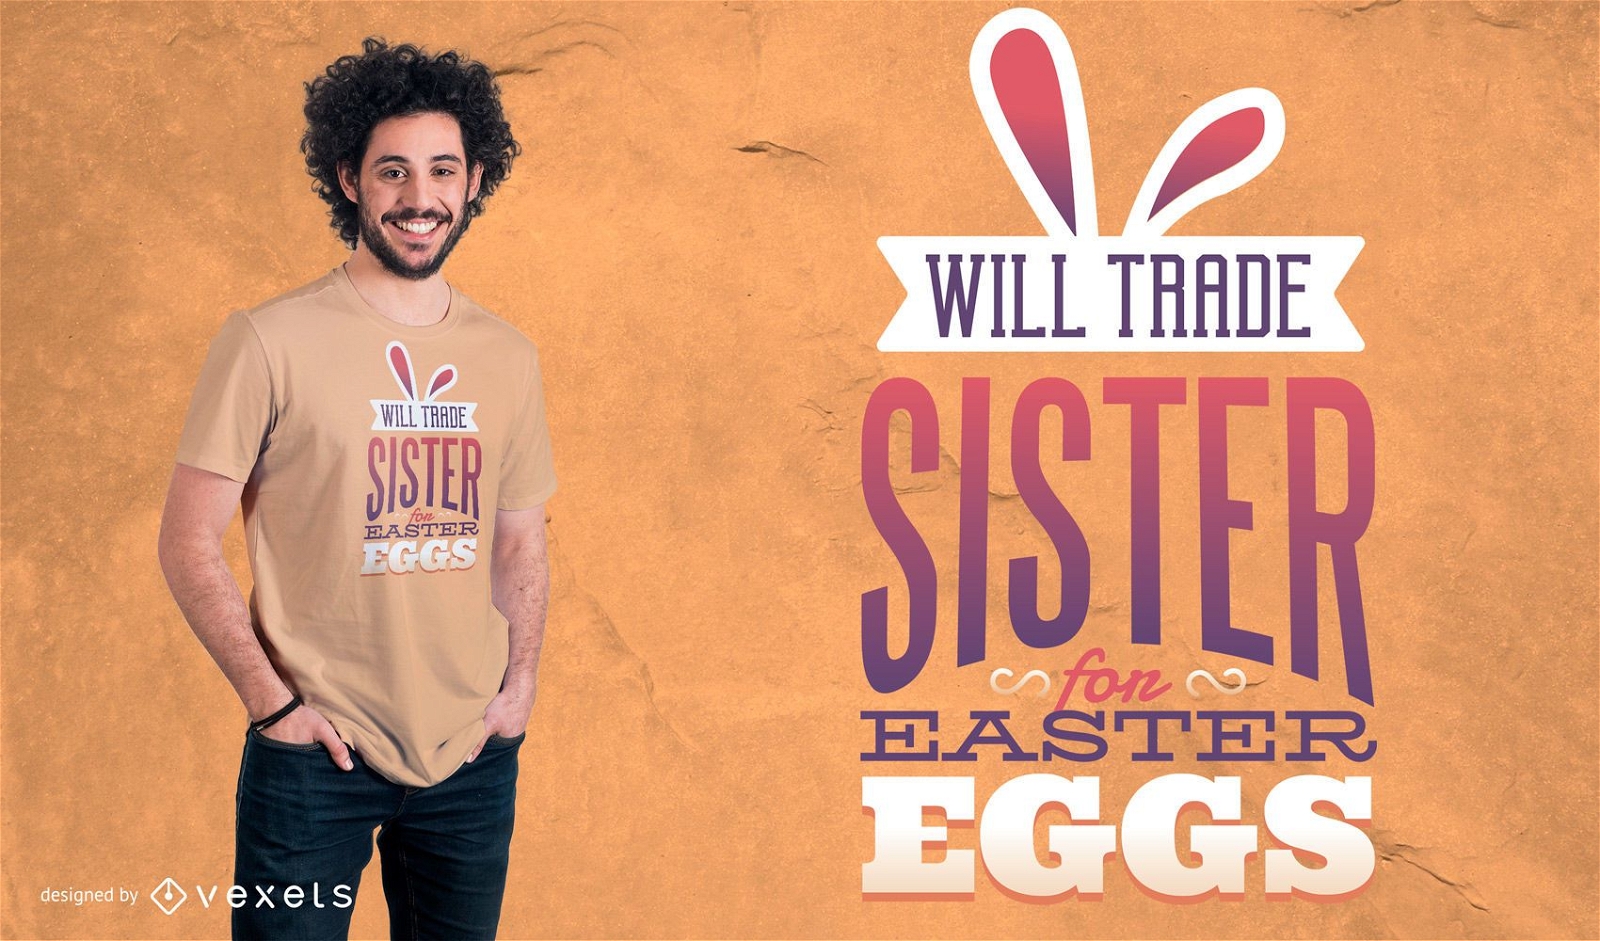 Dise?o de camiseta Trade Sister for Eggs